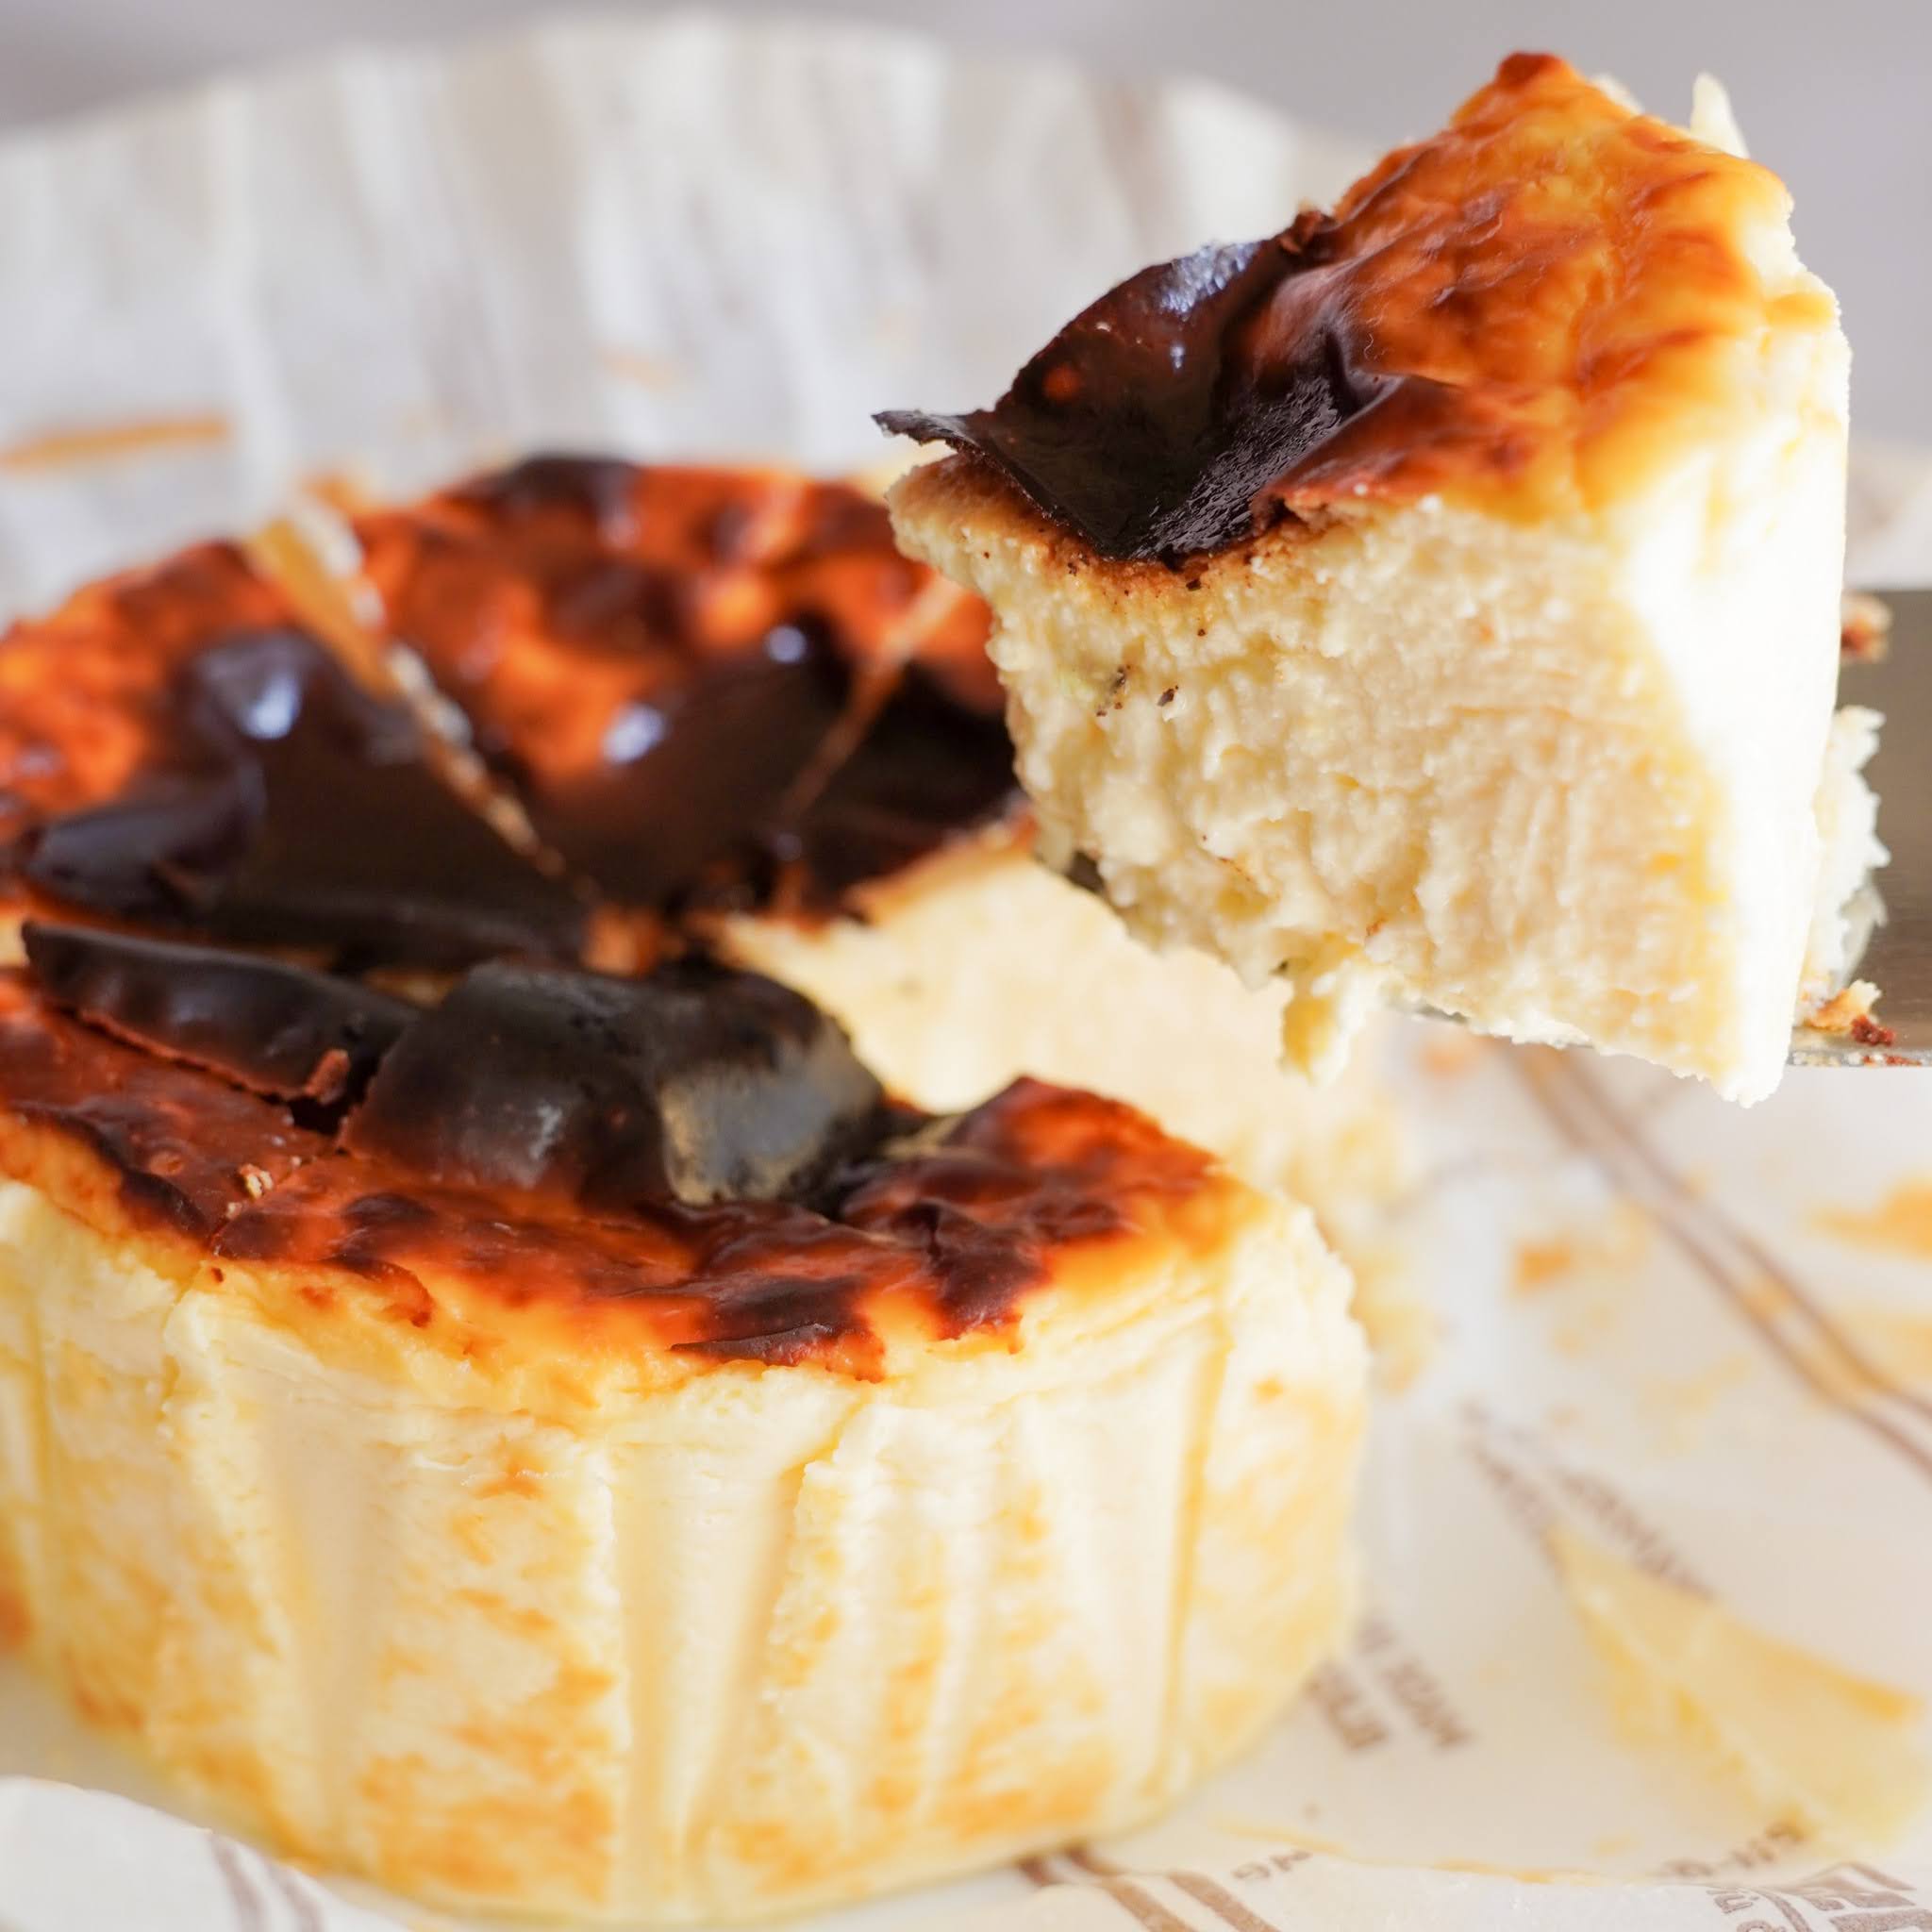 CACIORI 熟成バスクチーズケーキと非熟成の食べ比べセット